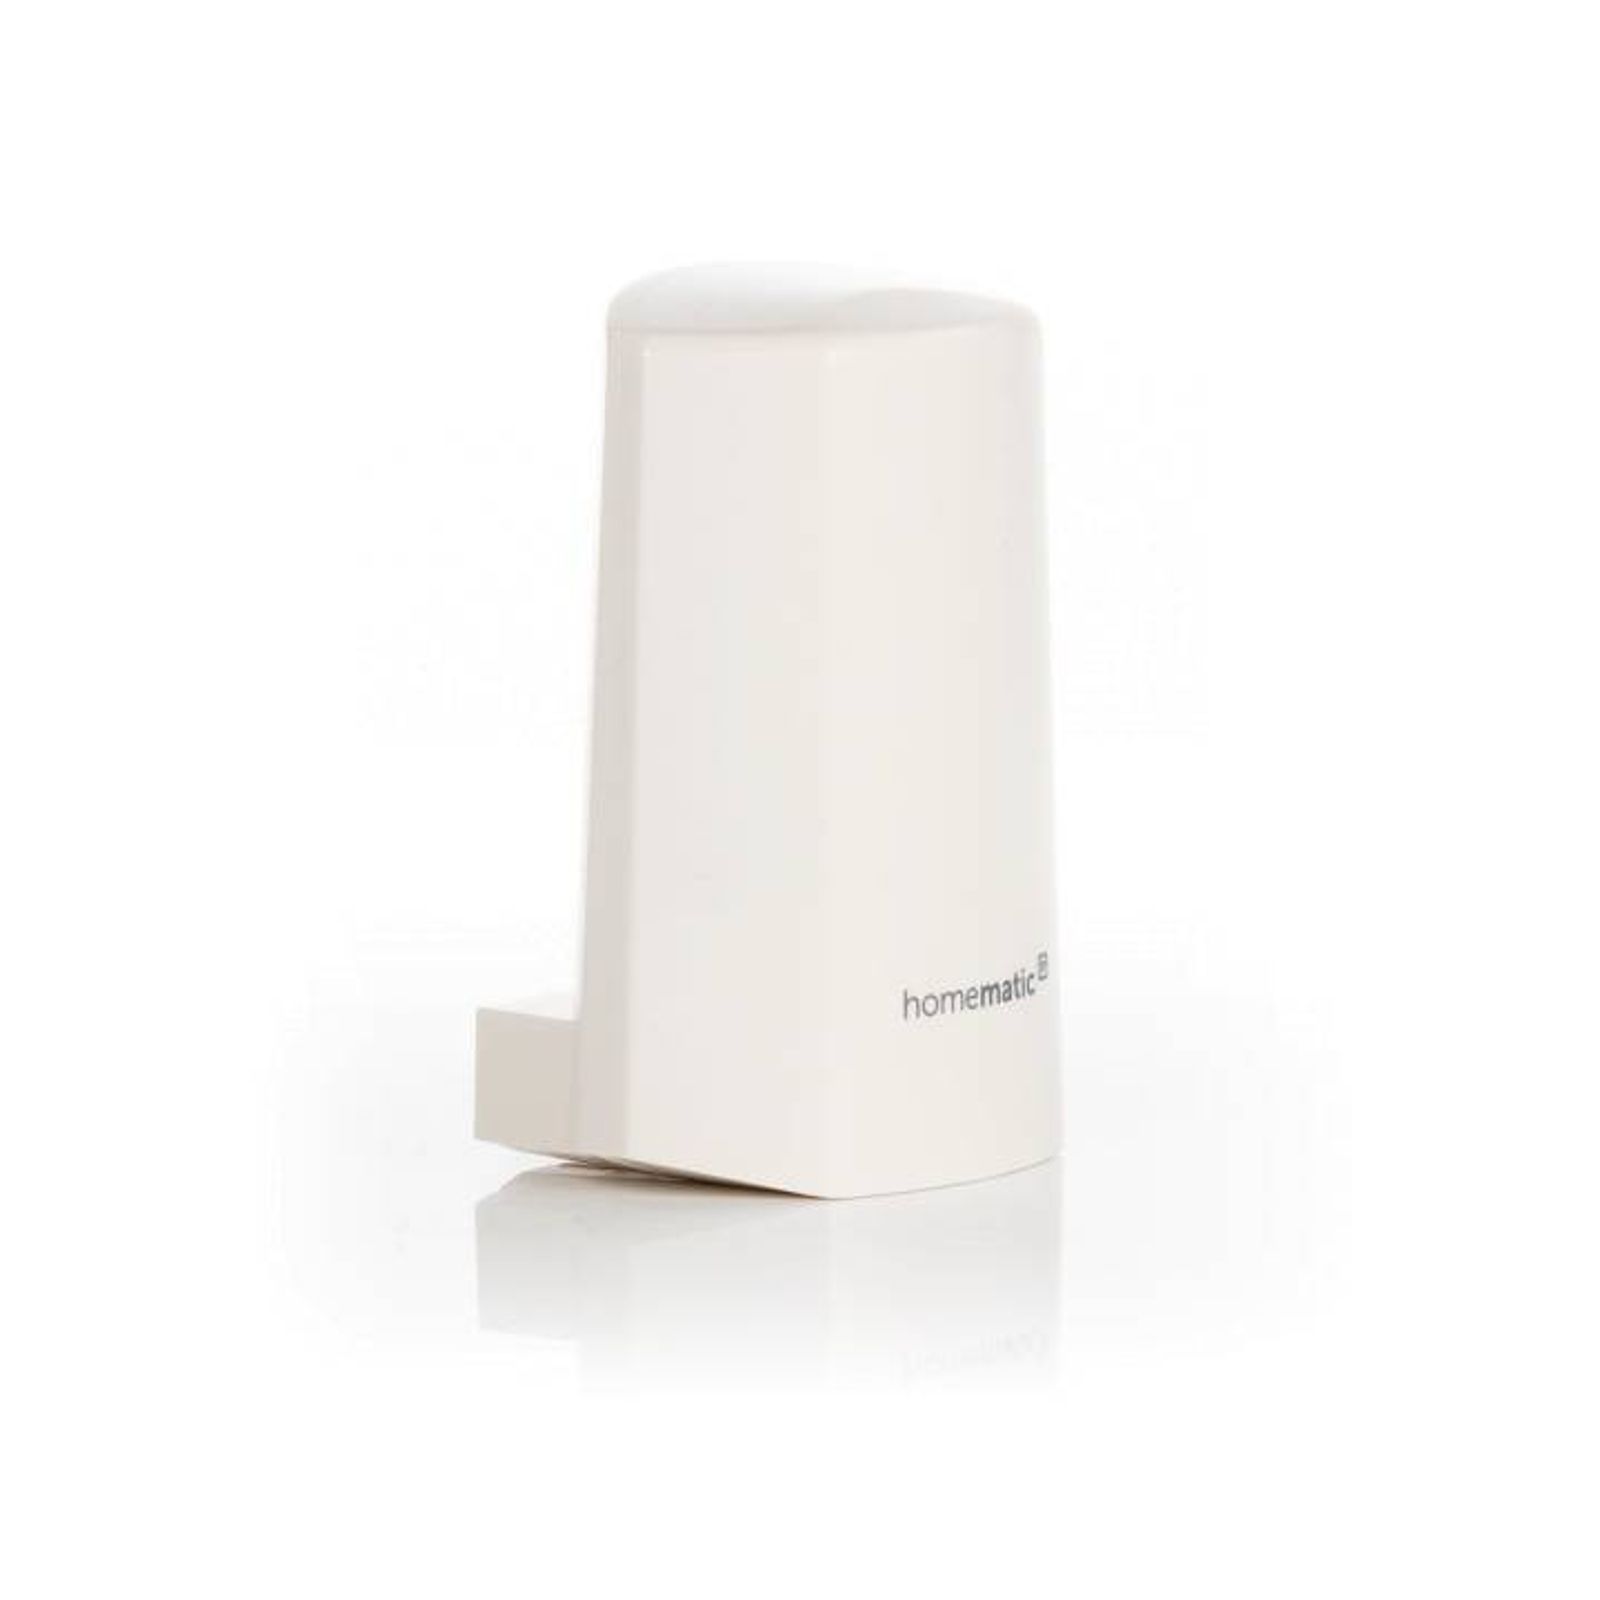 Homematic IP Smart Home Temperatur- und Luftfeuchtigkeitssensor HmIP-STHO - außen, weiß